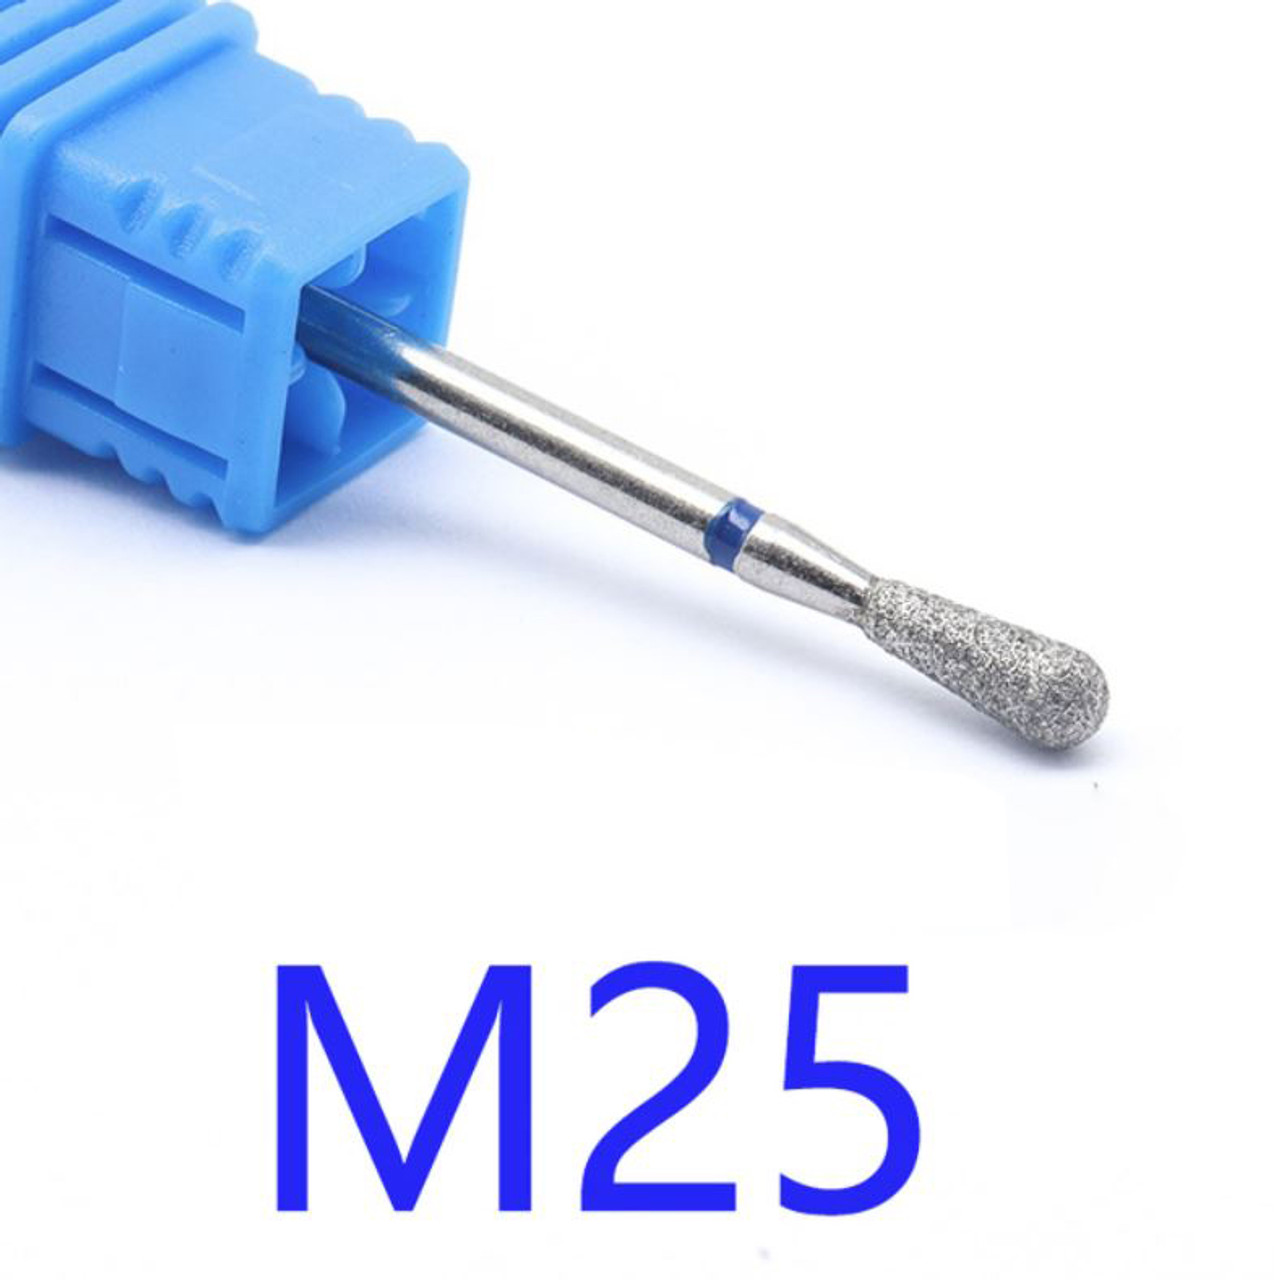 NDi beauty Diamond Drill Bit - 3/32 shank (MEDIUM) - M25